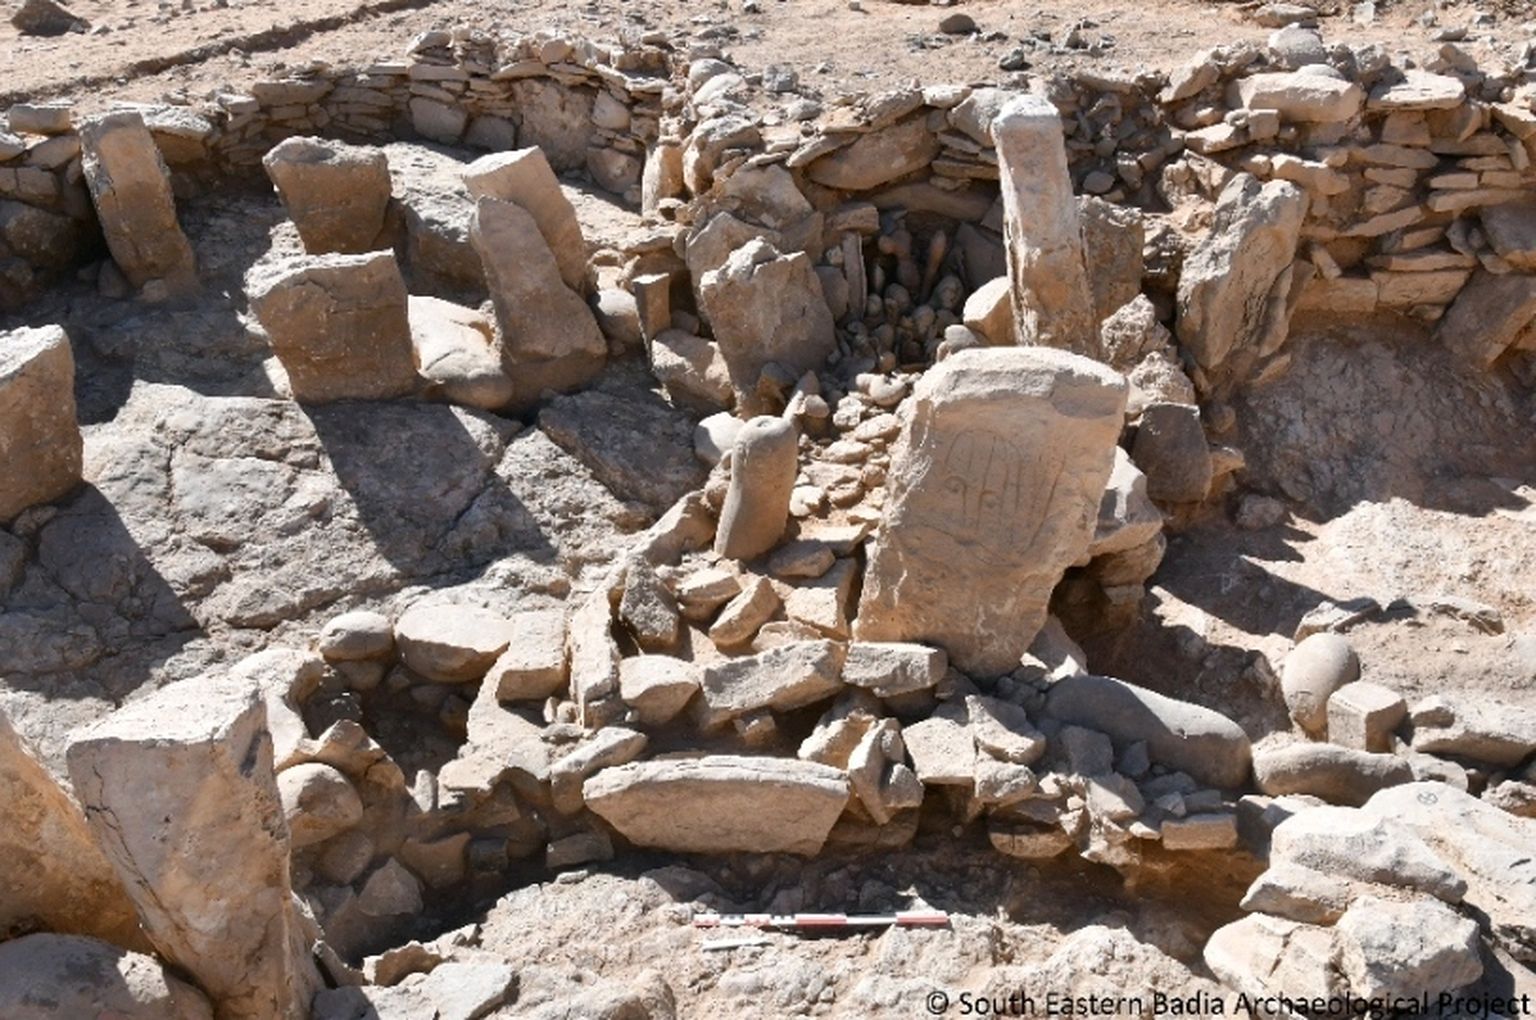 Pildil on kaks Ida-Jordaaniast leitud graveeritud kivi